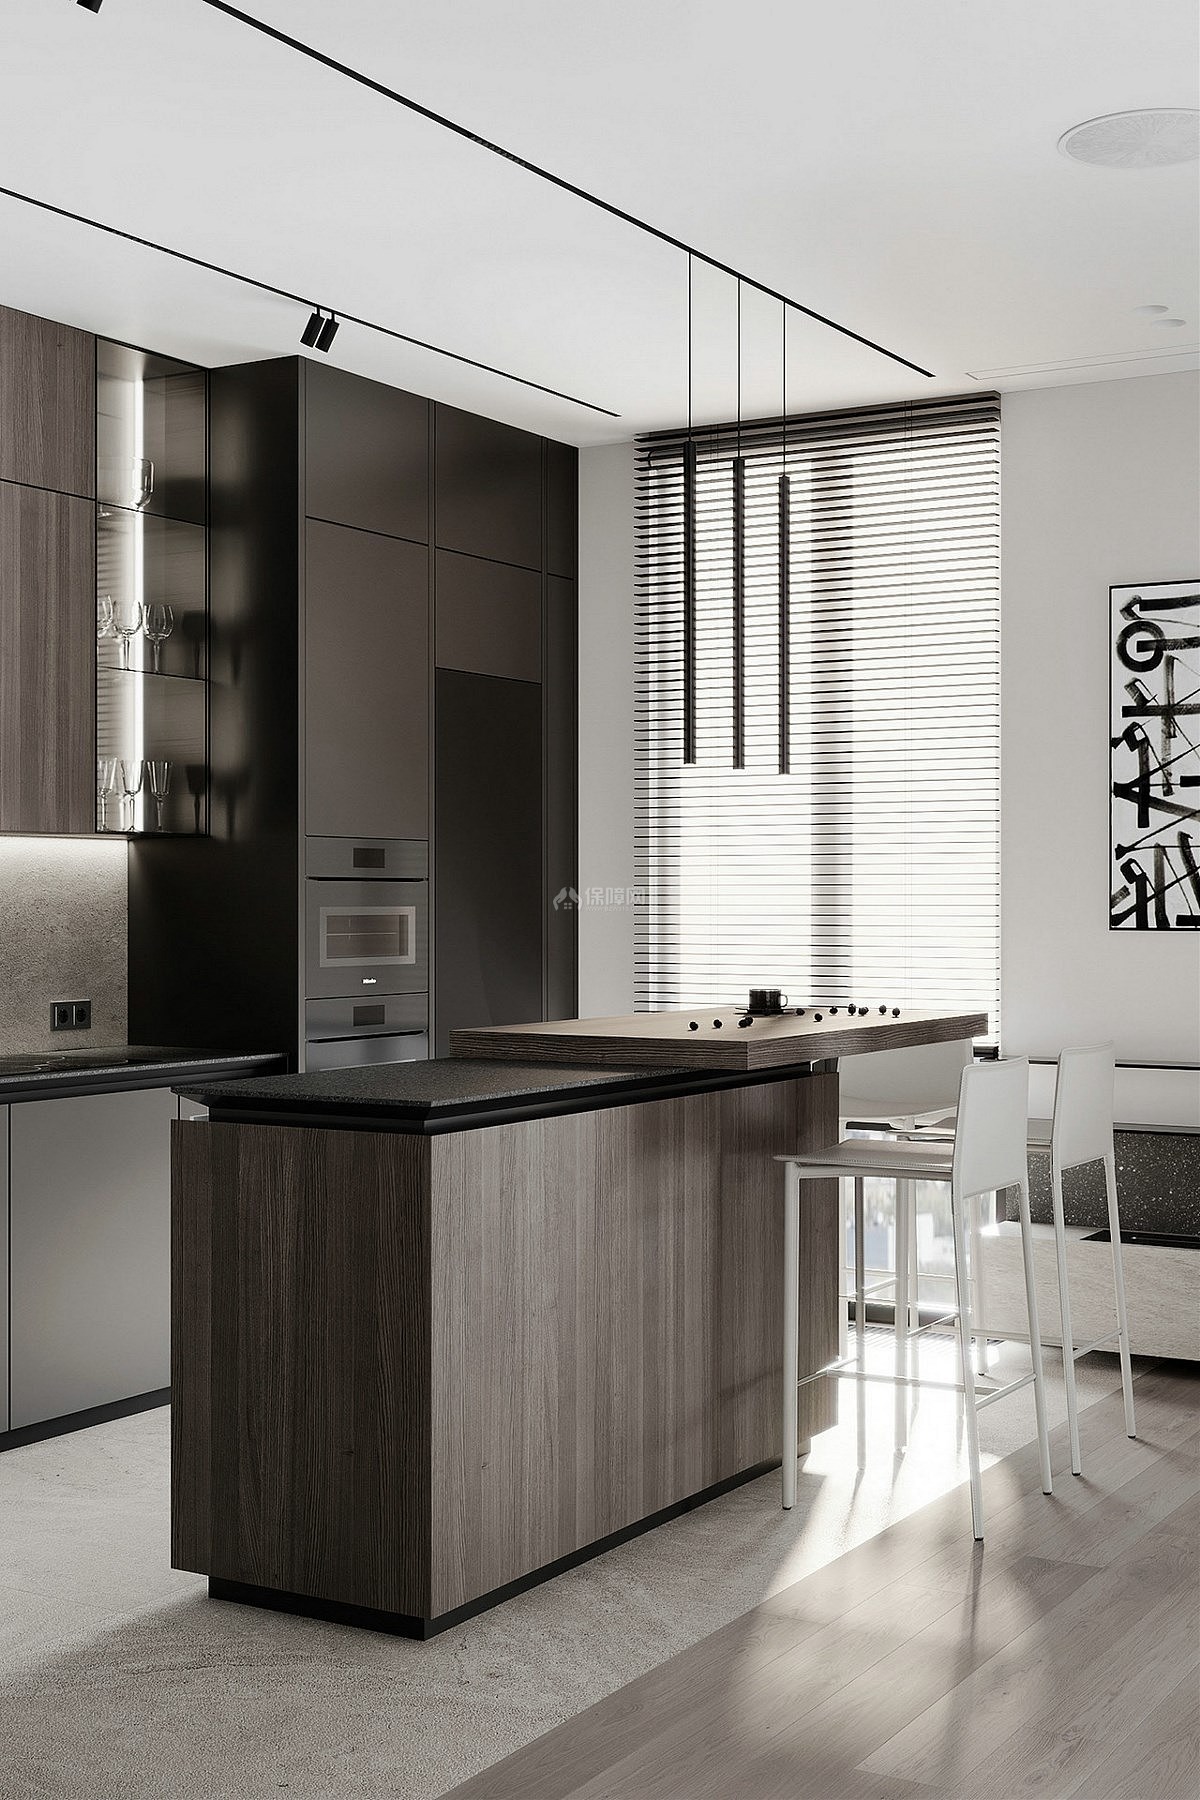 78㎡极简黑白灰公寓厨房岛台设计